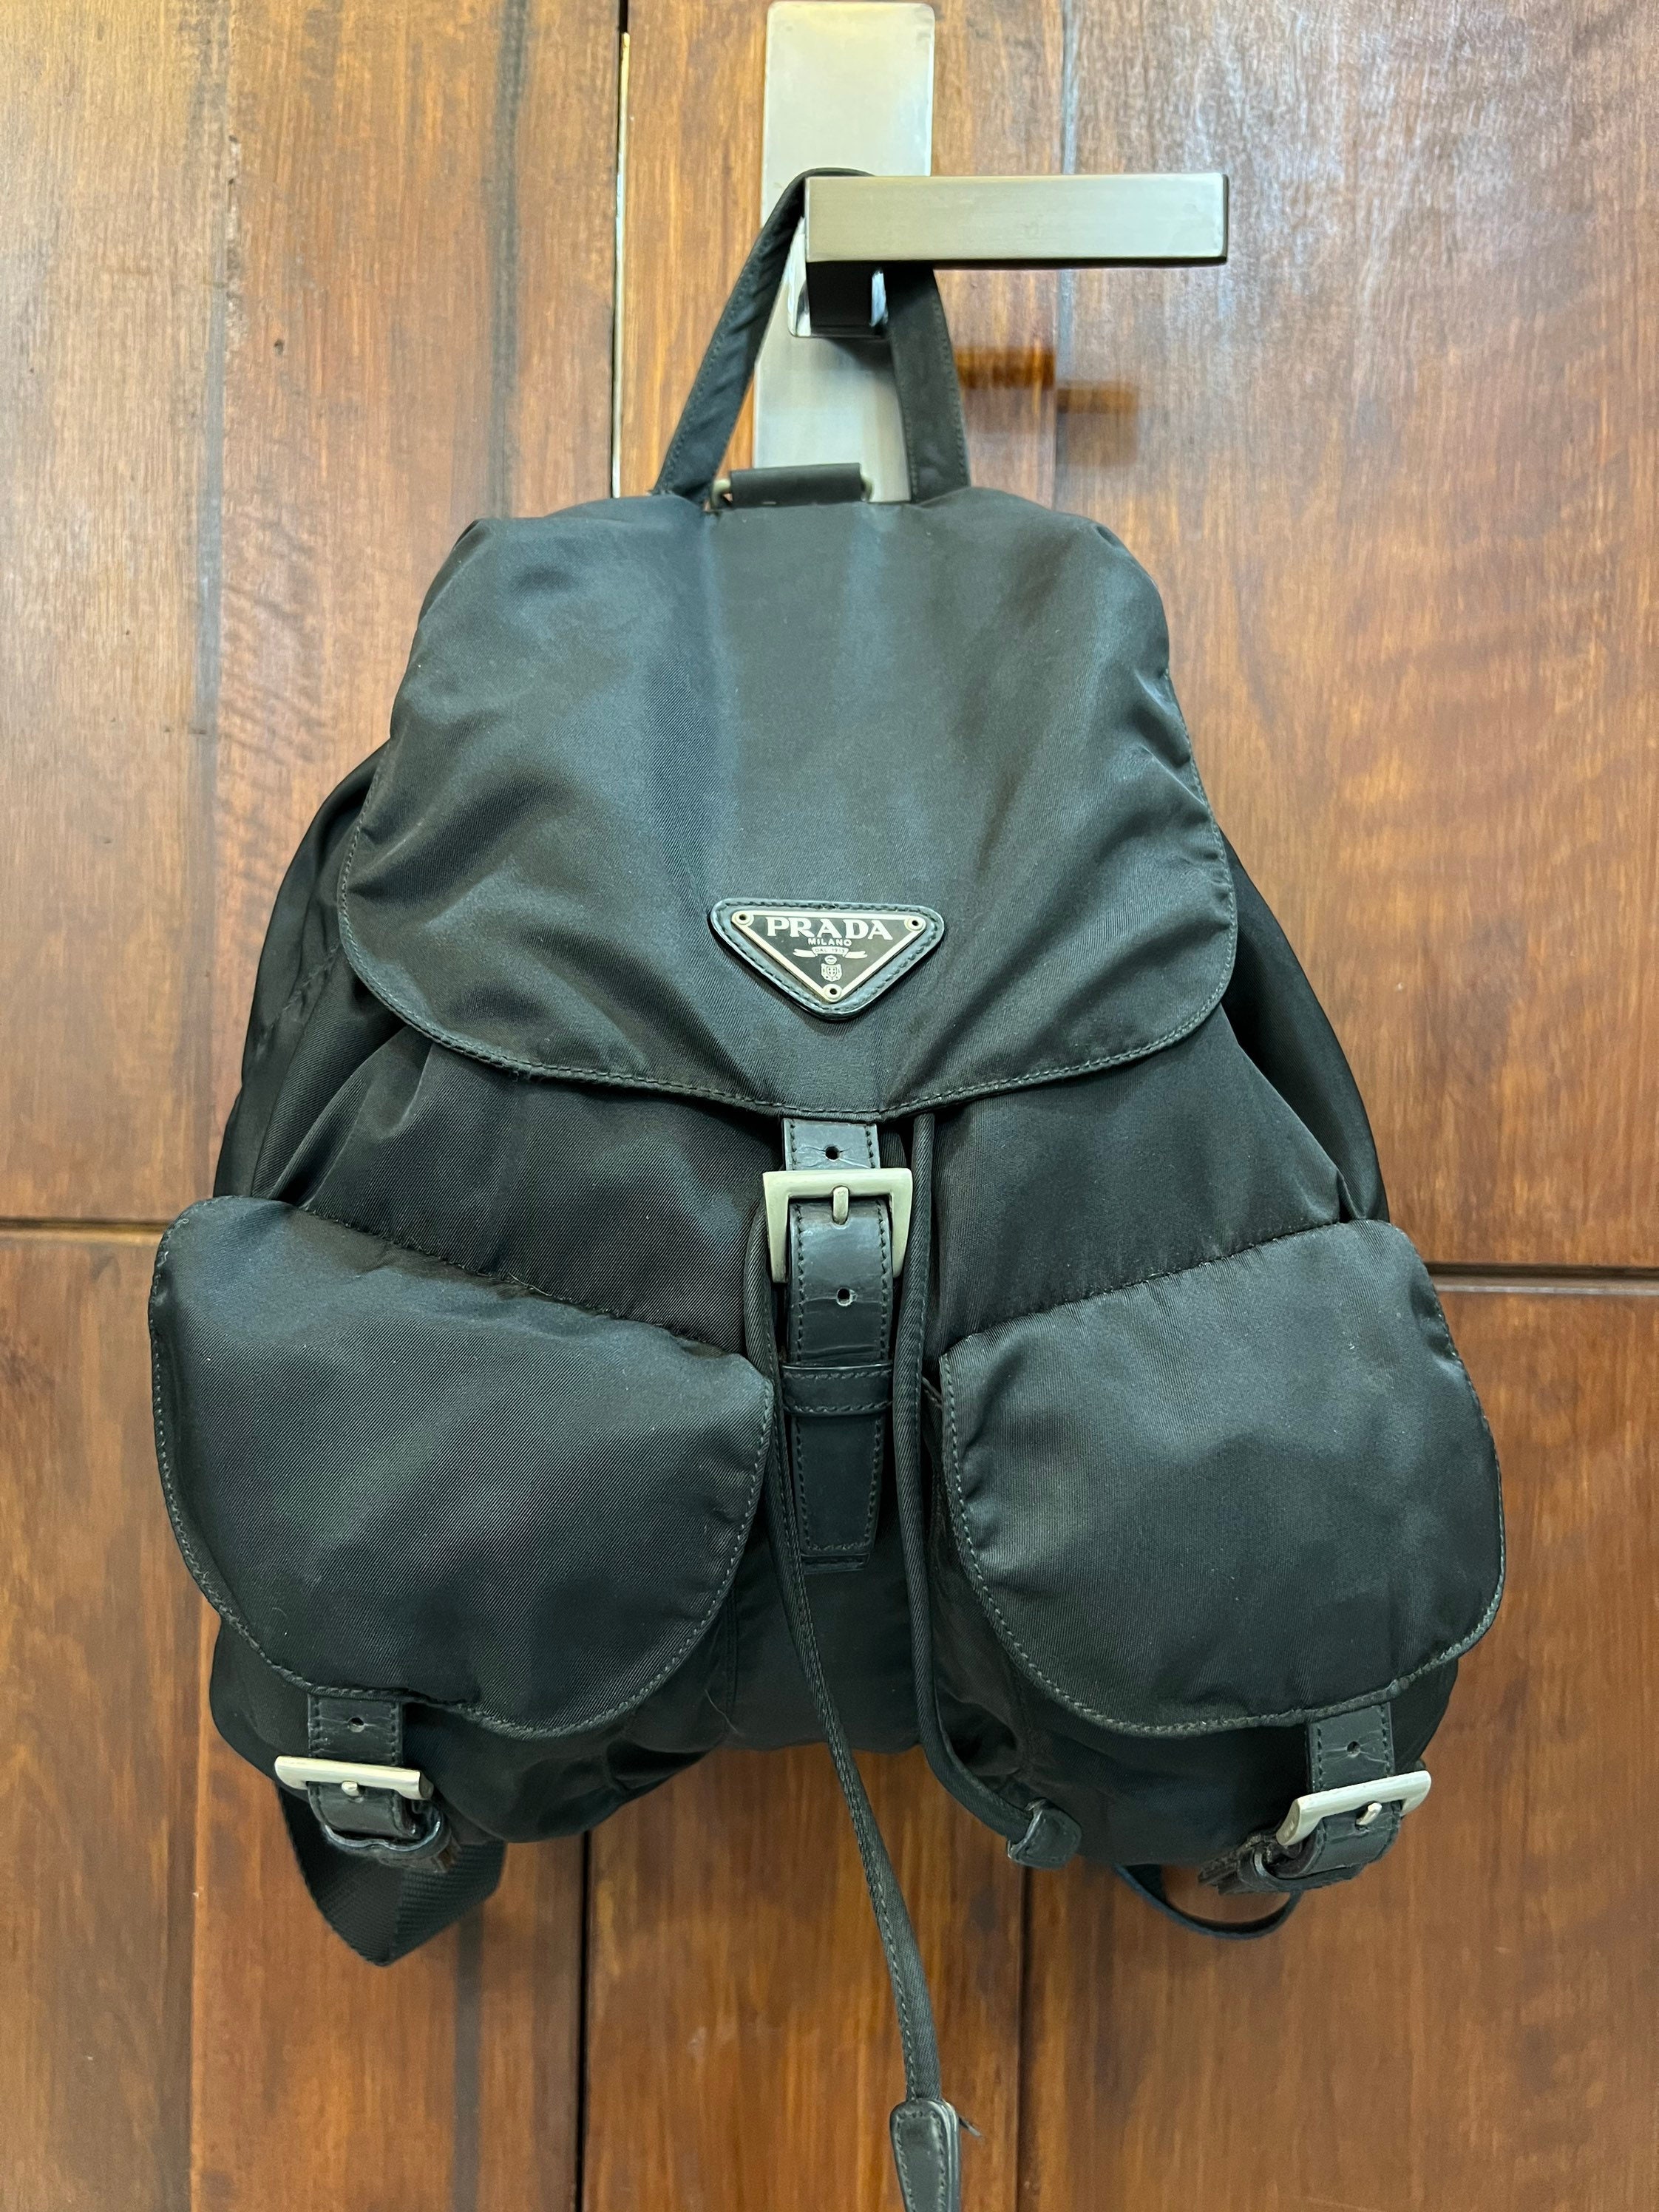 Bape Leather Backpacks for Women